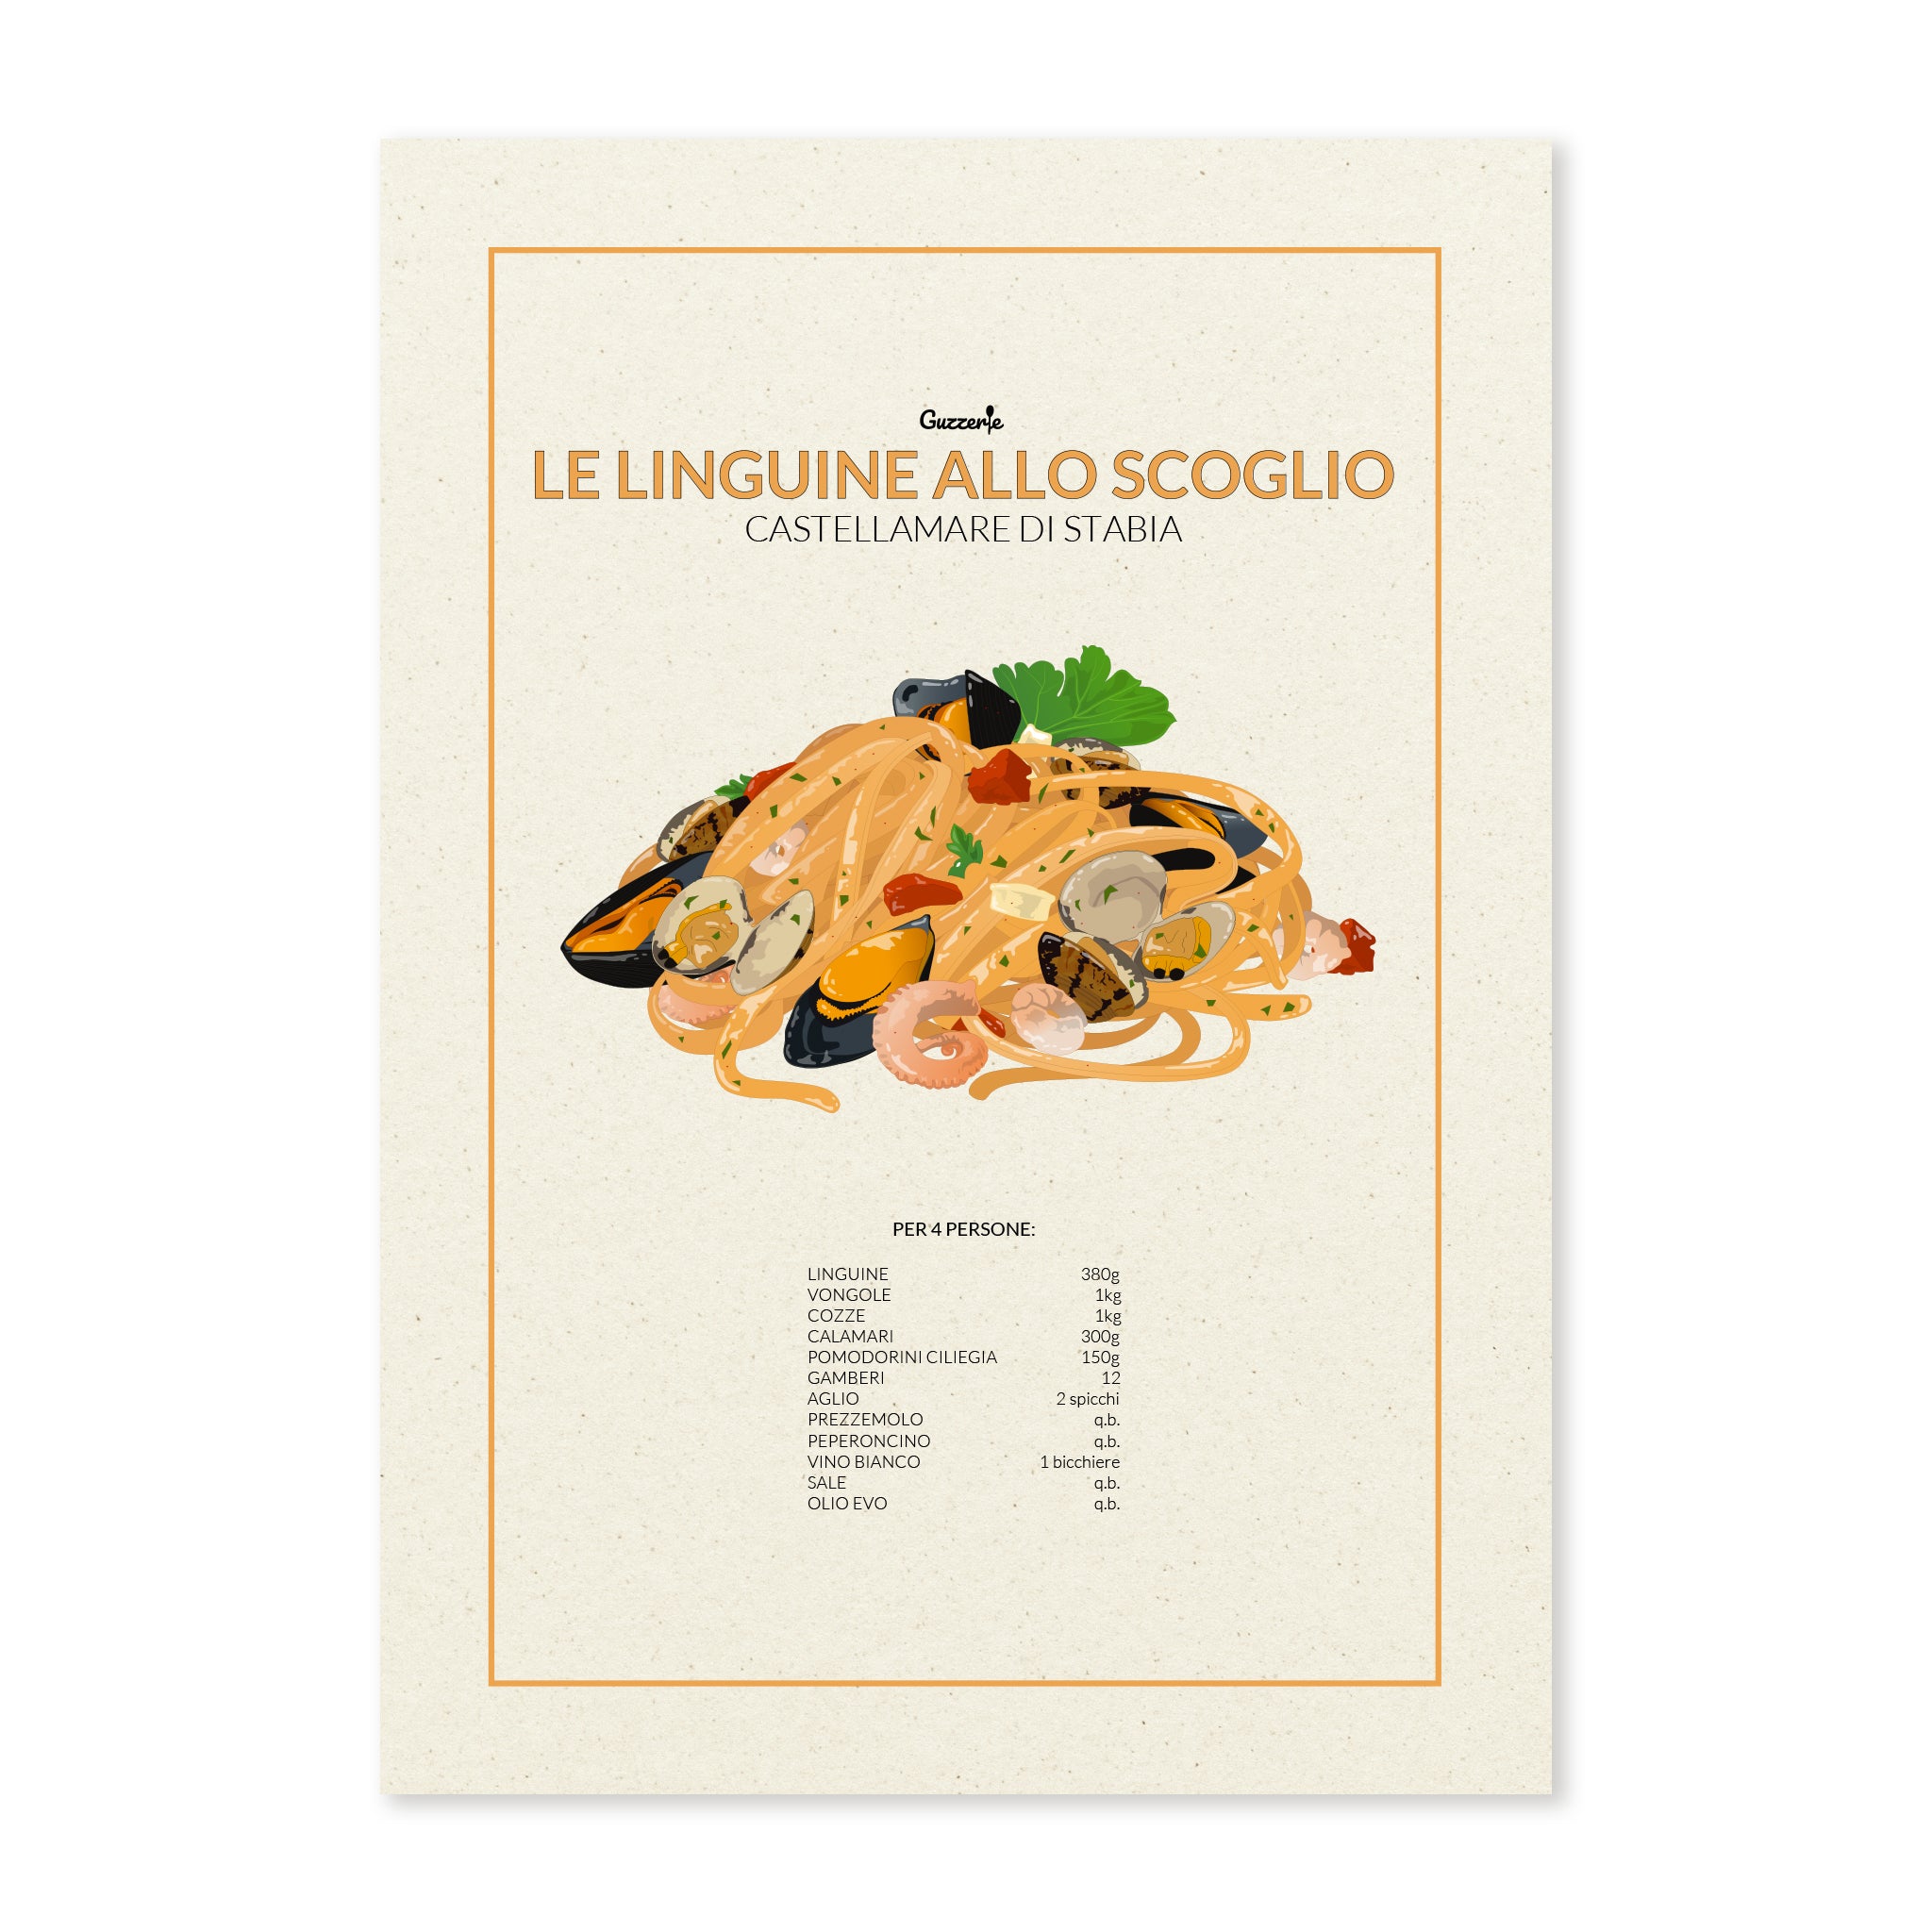 Iconic Poster of Le Linguine Allo Scoglio | Guzzerie